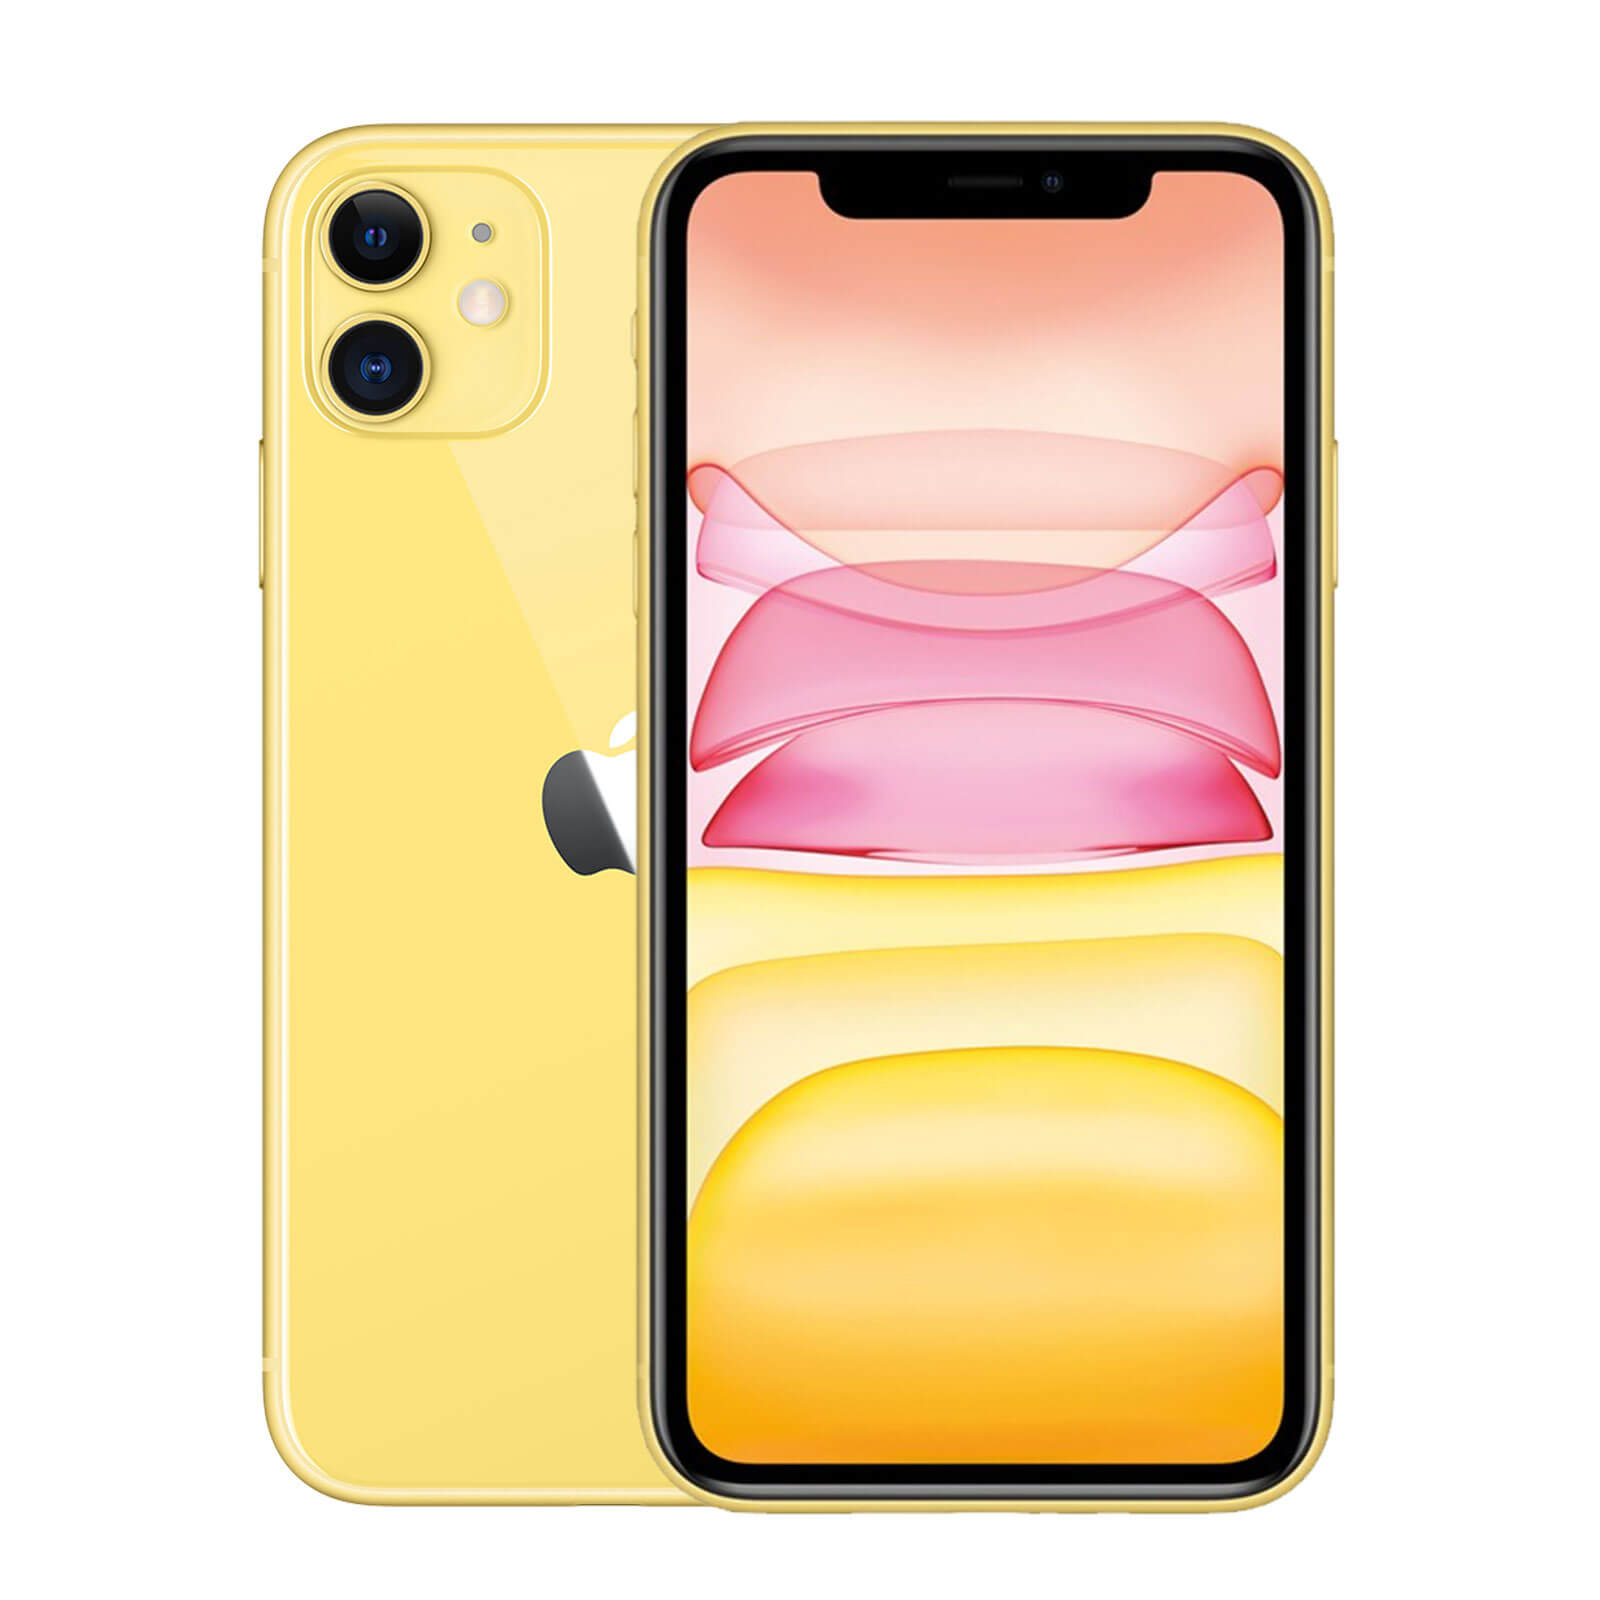 Apple iPhone 11 256GB Gelb Fair - Ohne Vertrag